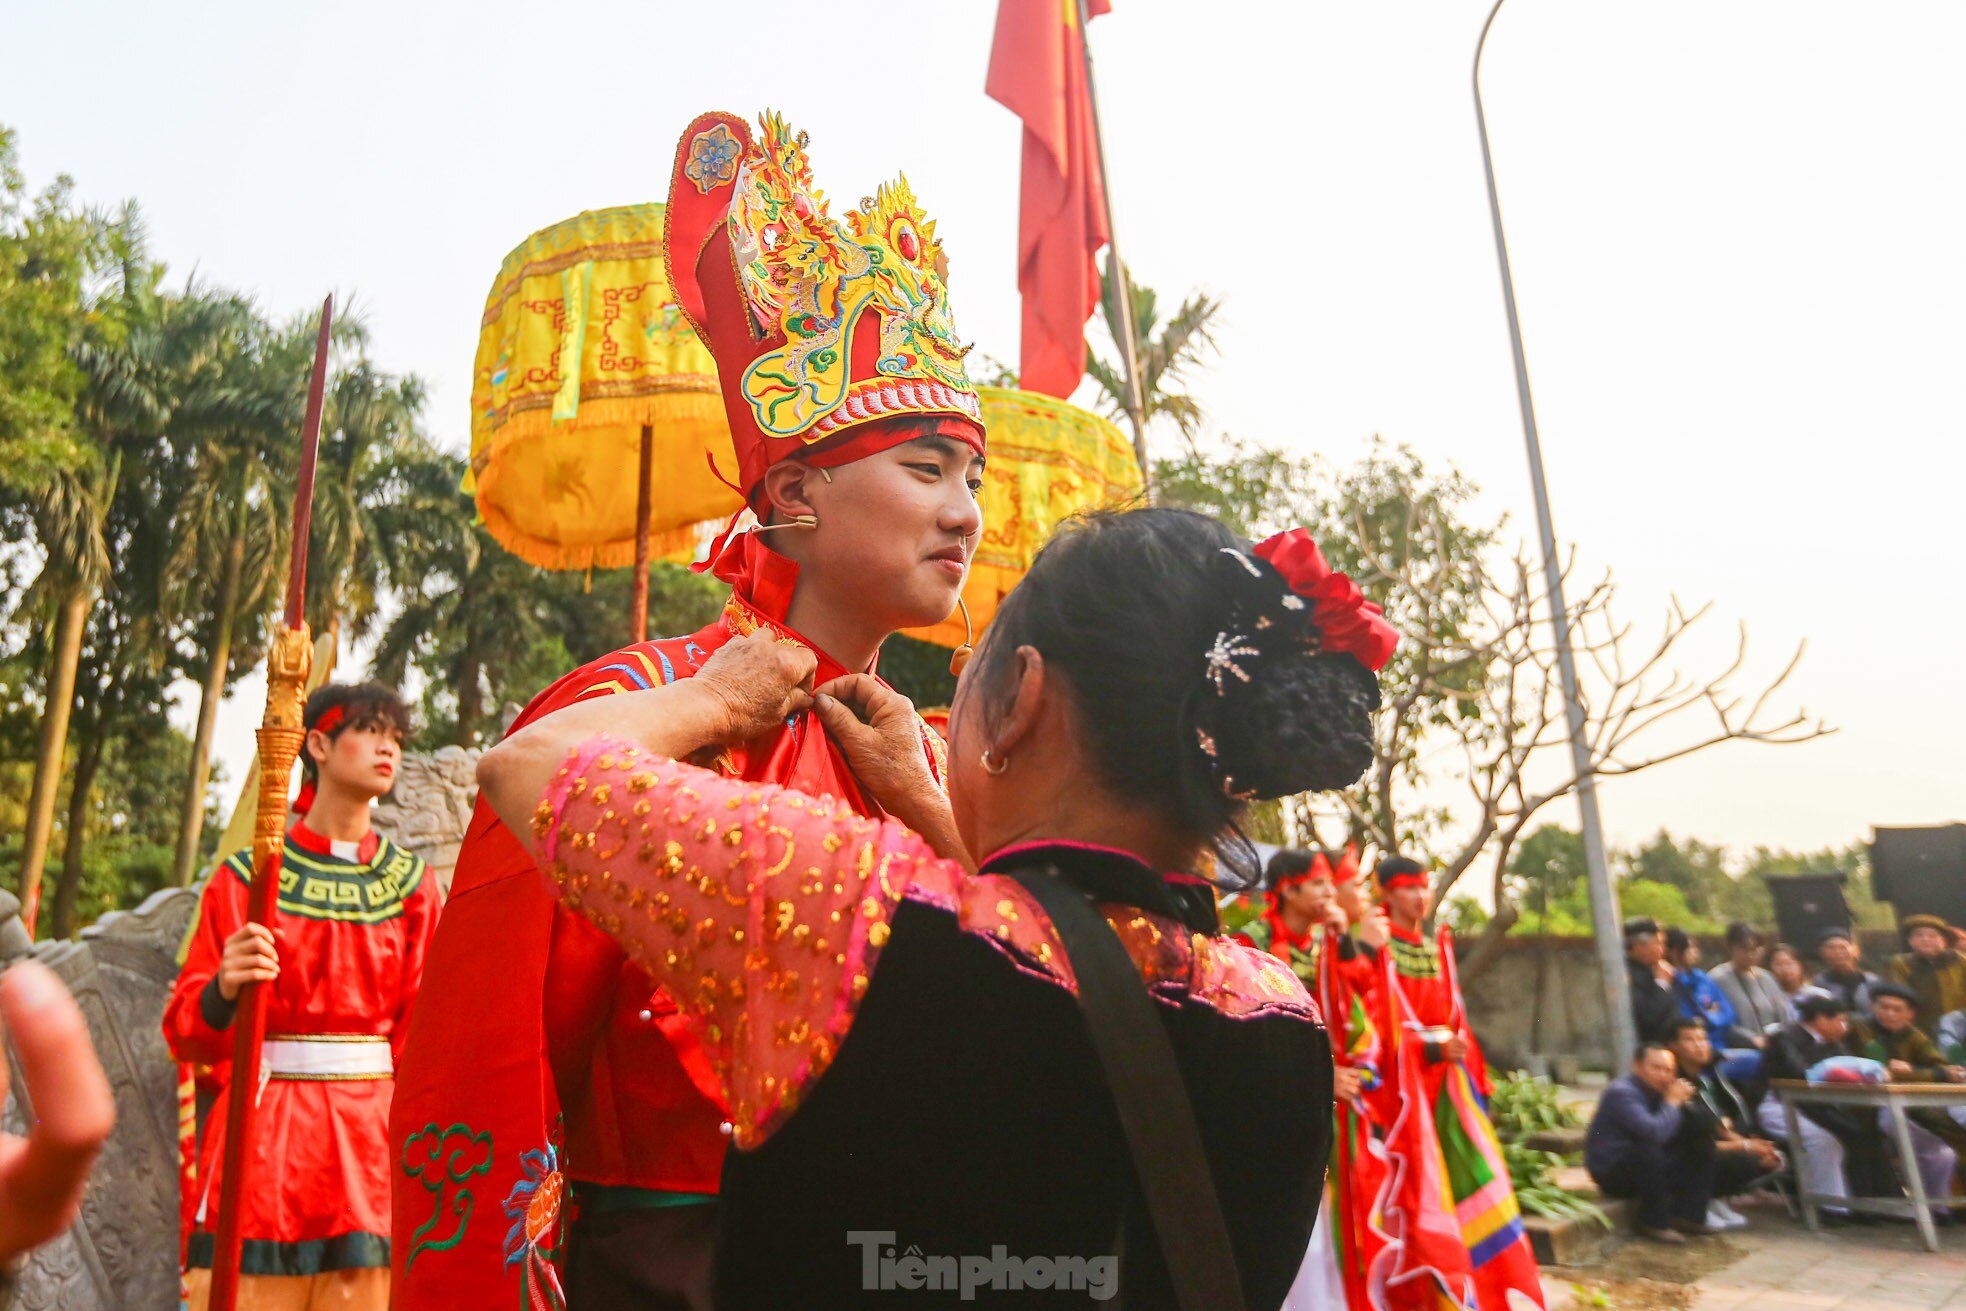 Xem nam nhân thi nhau trổ tài để kén rể tại lễ hội ở Hà Nội ảnh 19